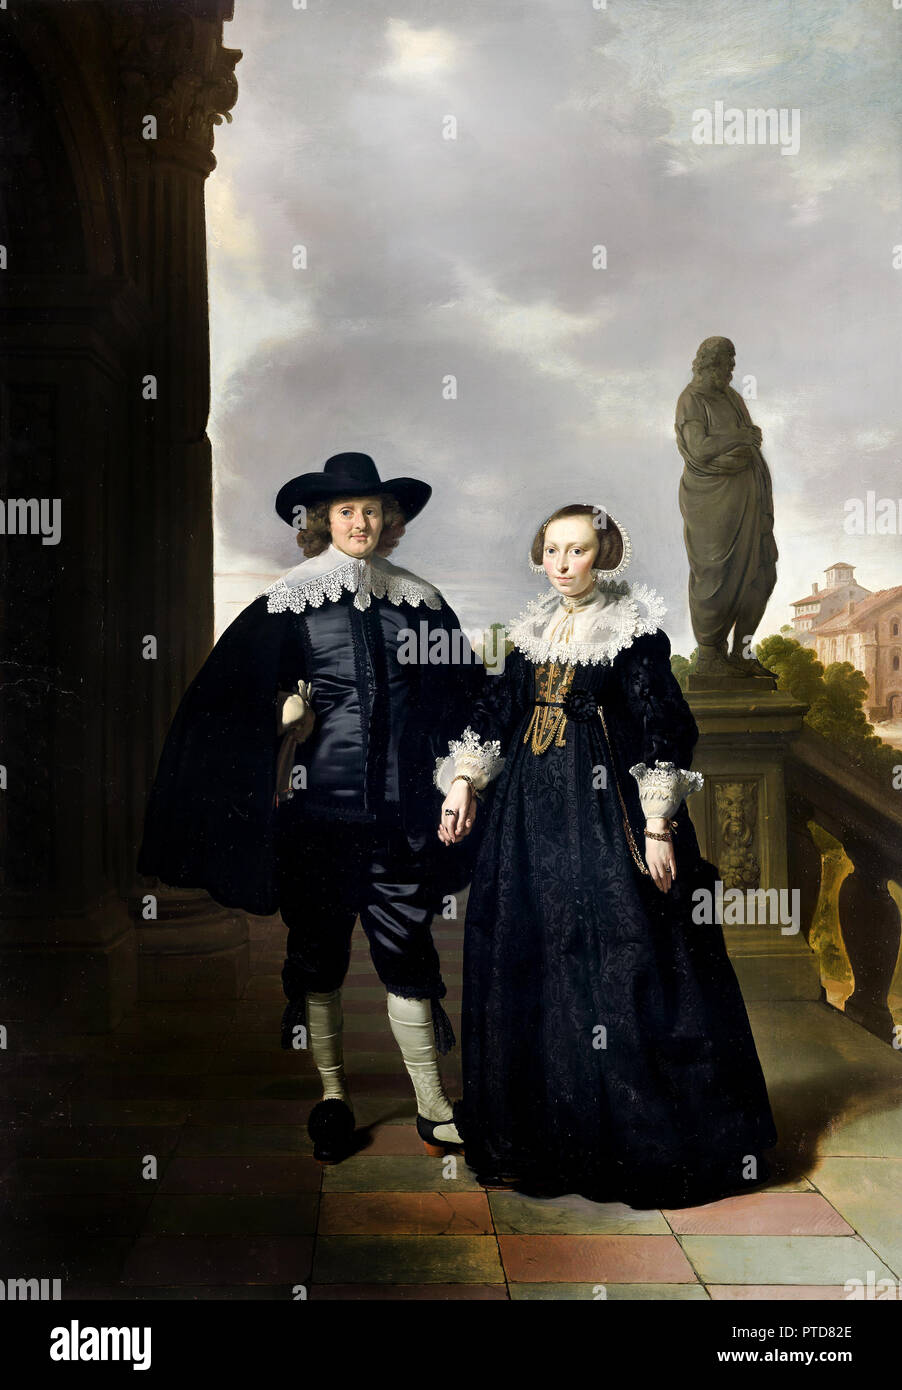 Thomas de Keyser, Frederick van Velthuysen et son épouse, Josina 1636 Huile sur panneau de bois, National Gallery of Victoria, Australie. Banque D'Images